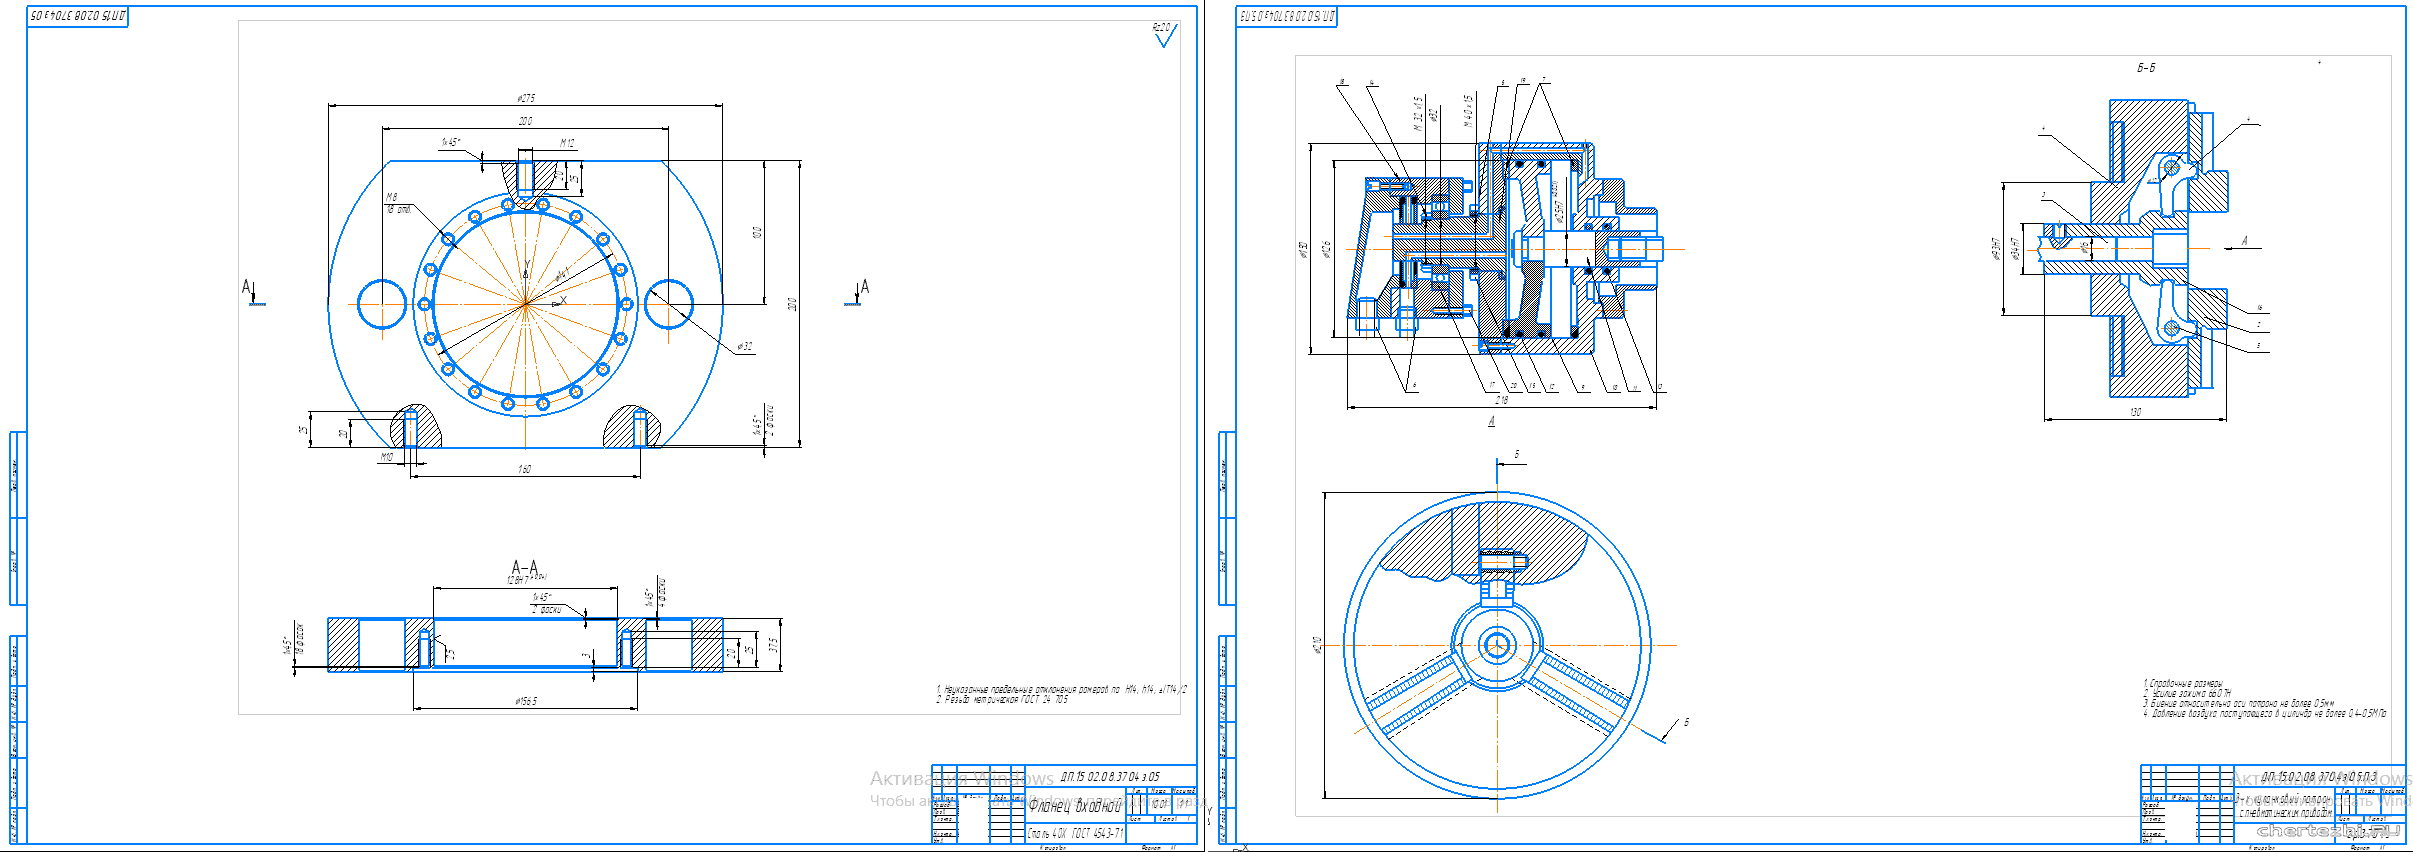 Дипломный проект (колледж) - Проектирование технологического процесса изготовления детали «Фланец входной»